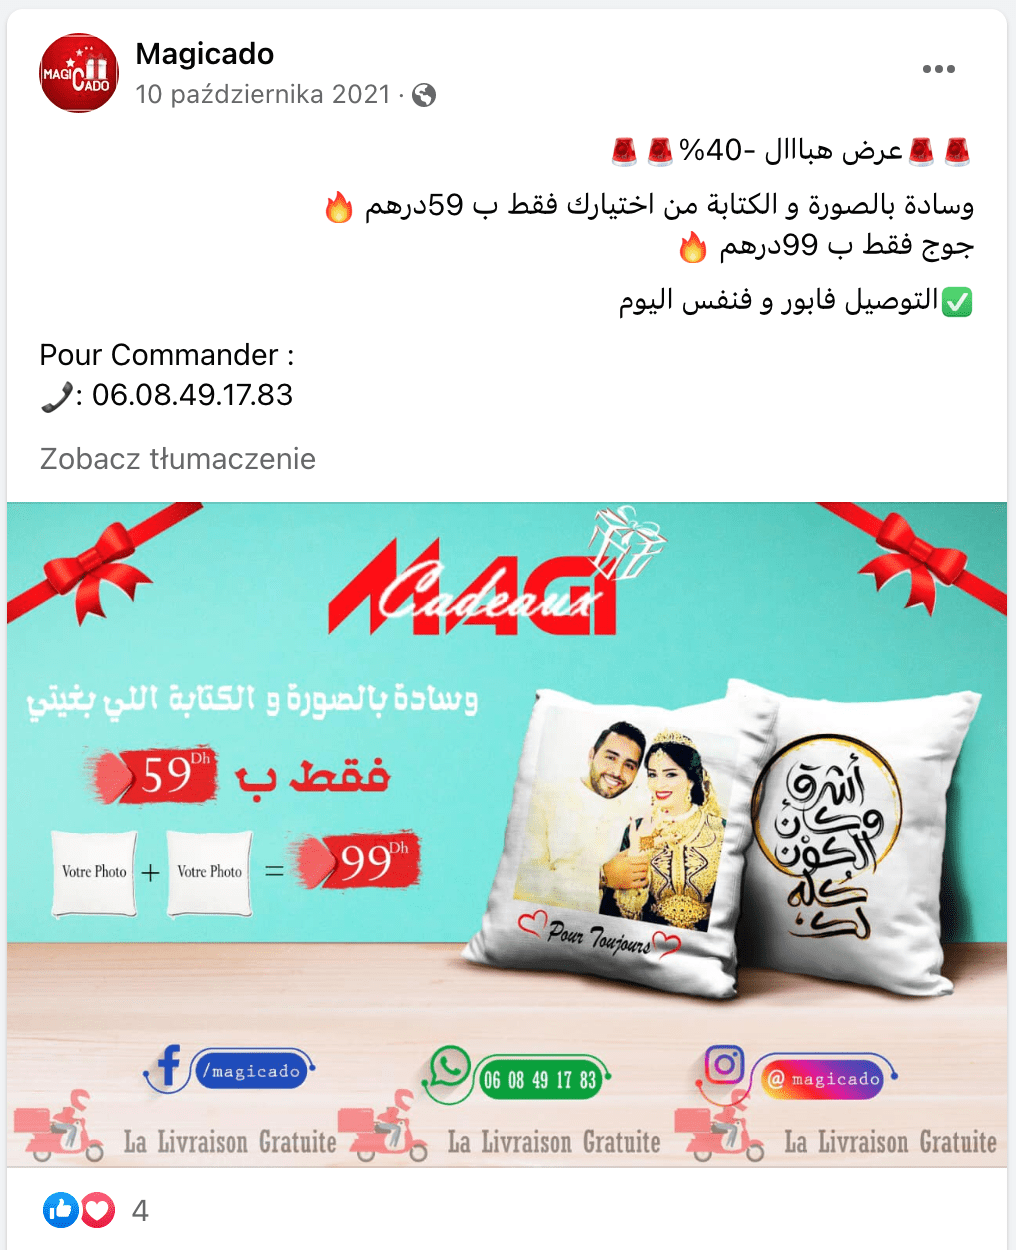 Zrzut ekranu posta opublikowanego na Facebooku. Dołączono do niego grafikę reklamującą spersonalizowany prezent: poduszkę z wizerunkiem pary młodej.